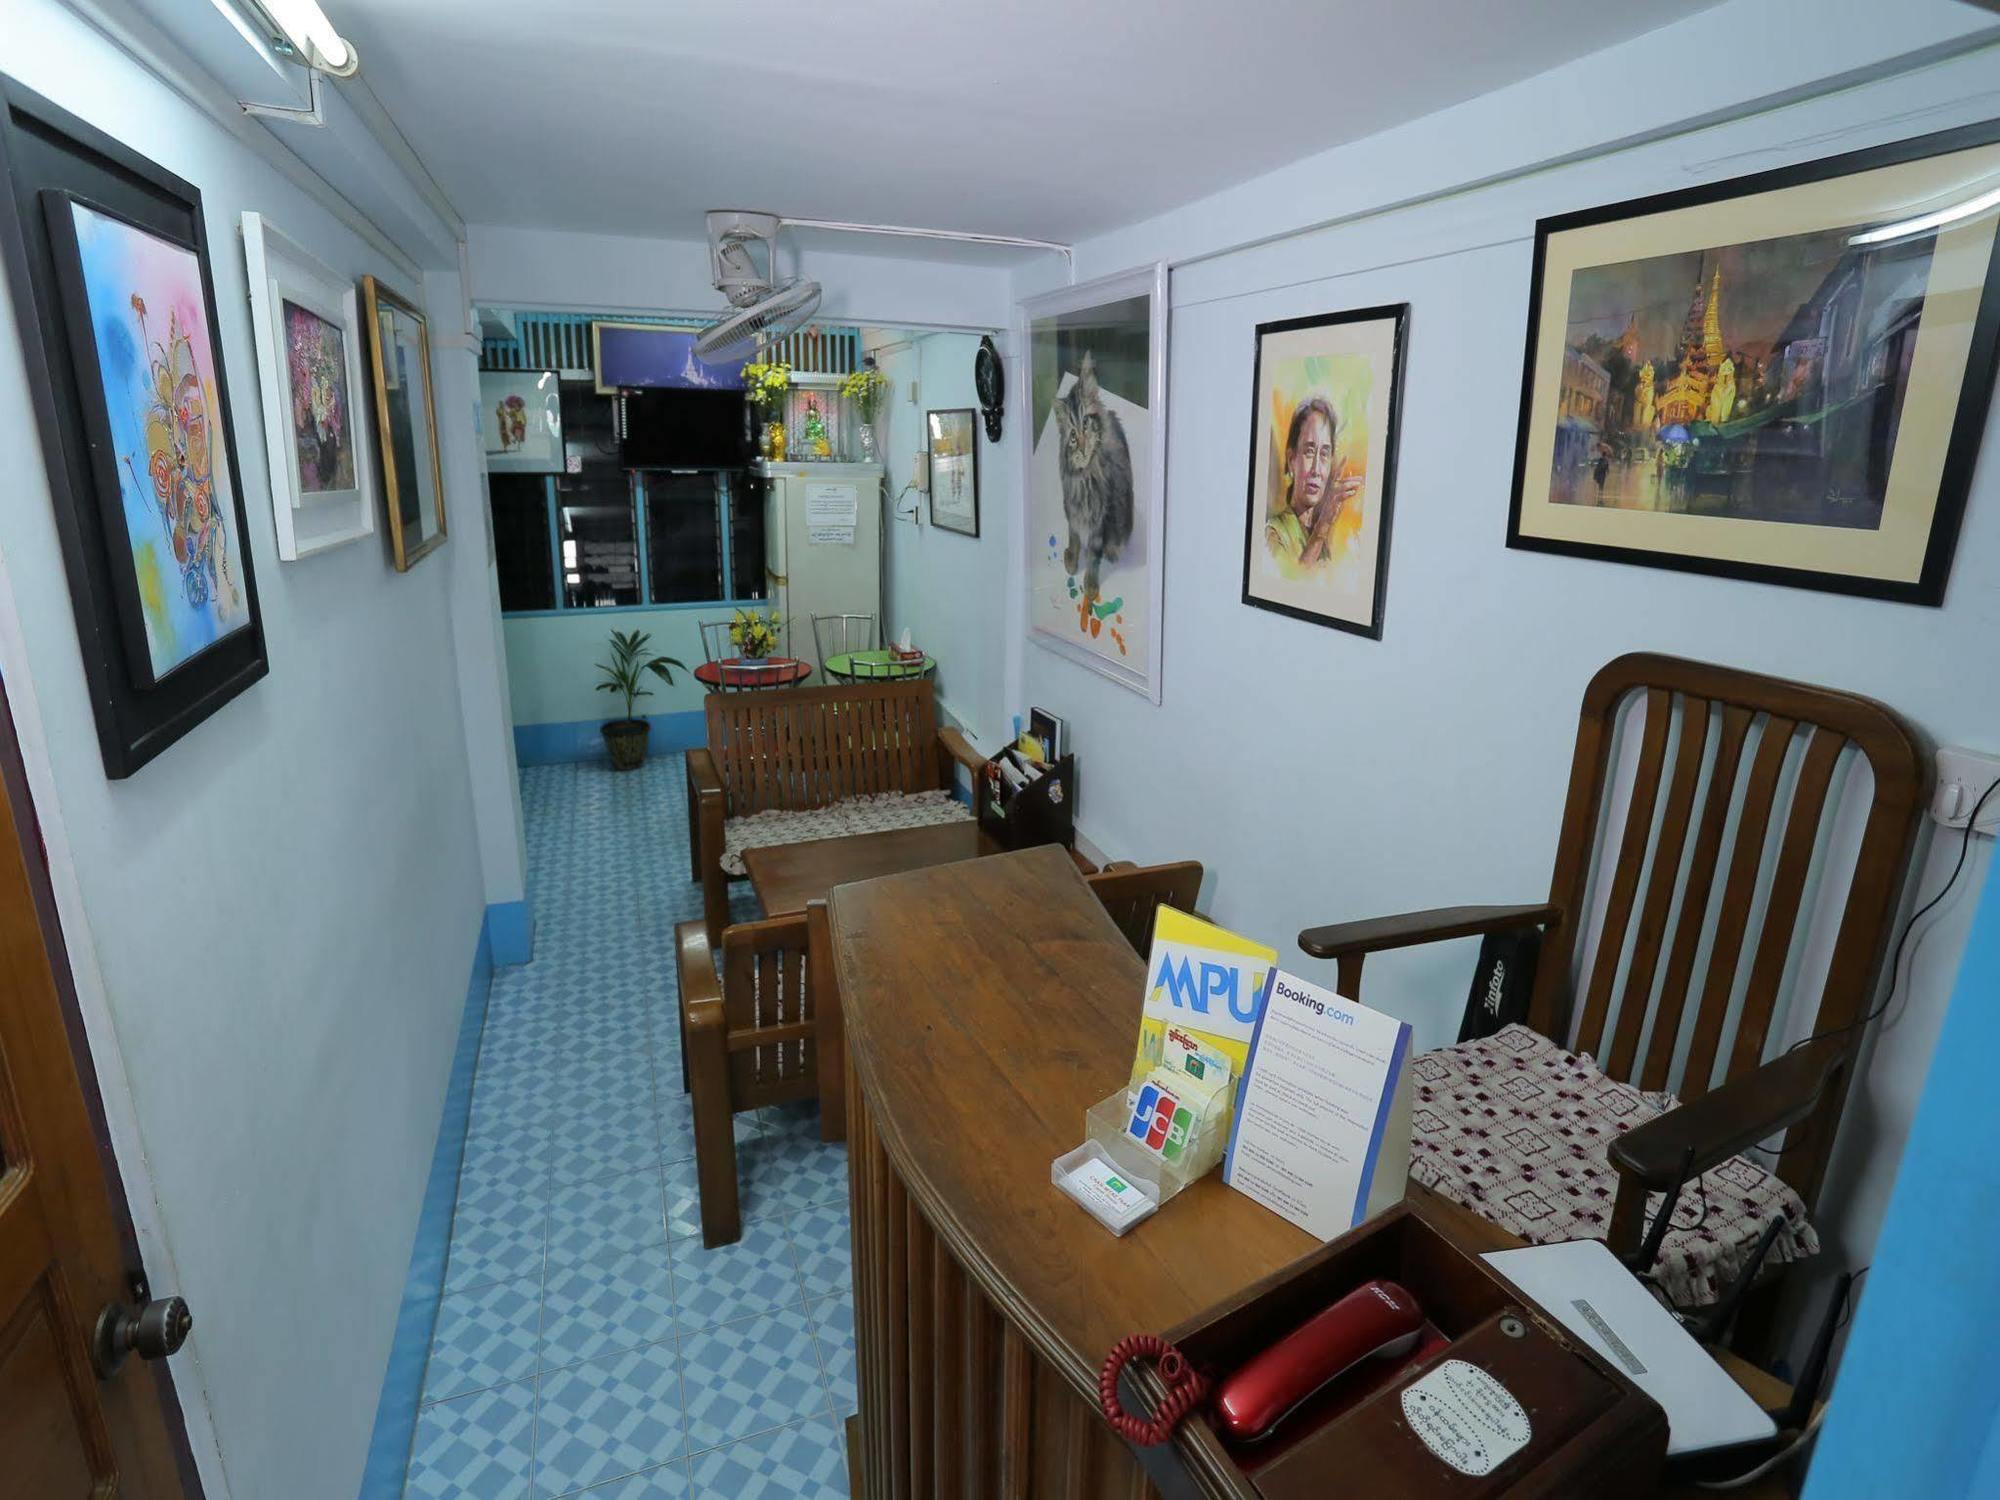 Chan Myae Thar Guest House Rangum Exterior foto